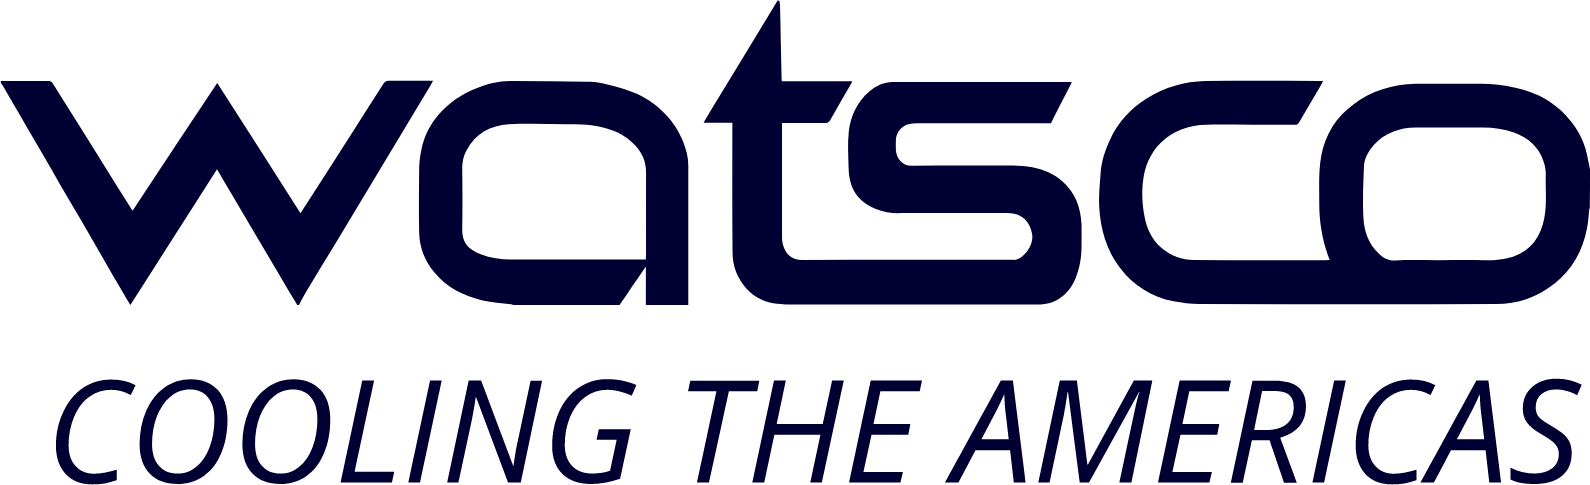 Watsco
 logo large (transparent PNG)